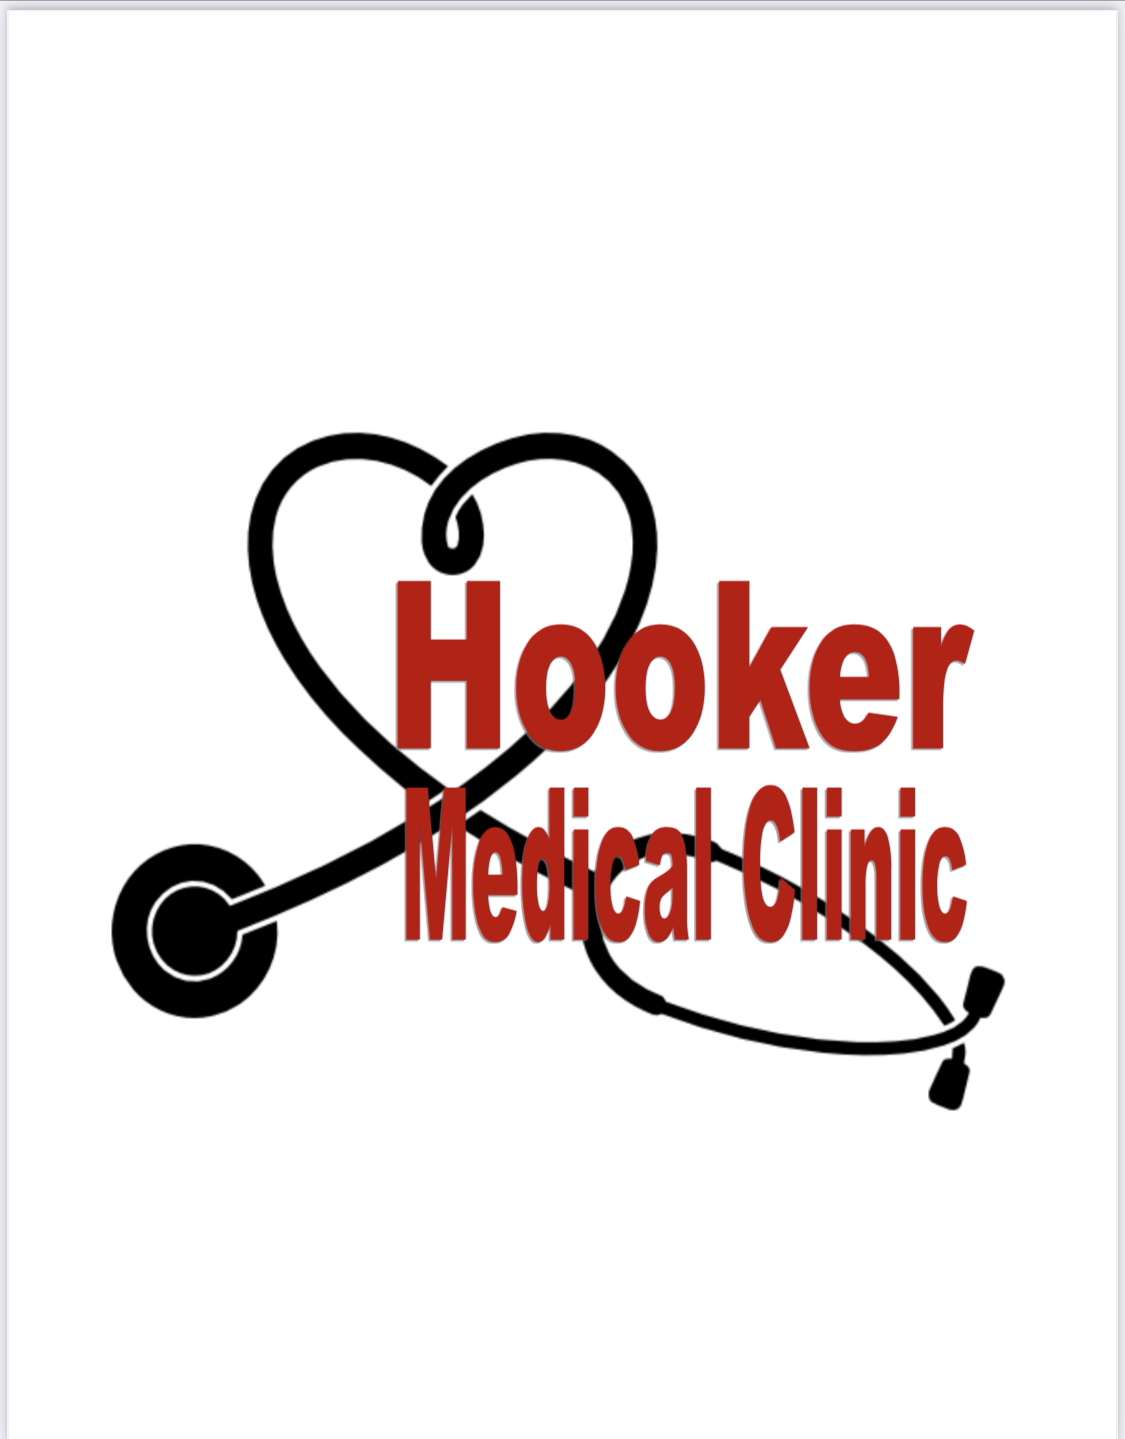 Hooker Medical Clinic LLC 101 Glaydas St, Hooker Oklahoma 73945